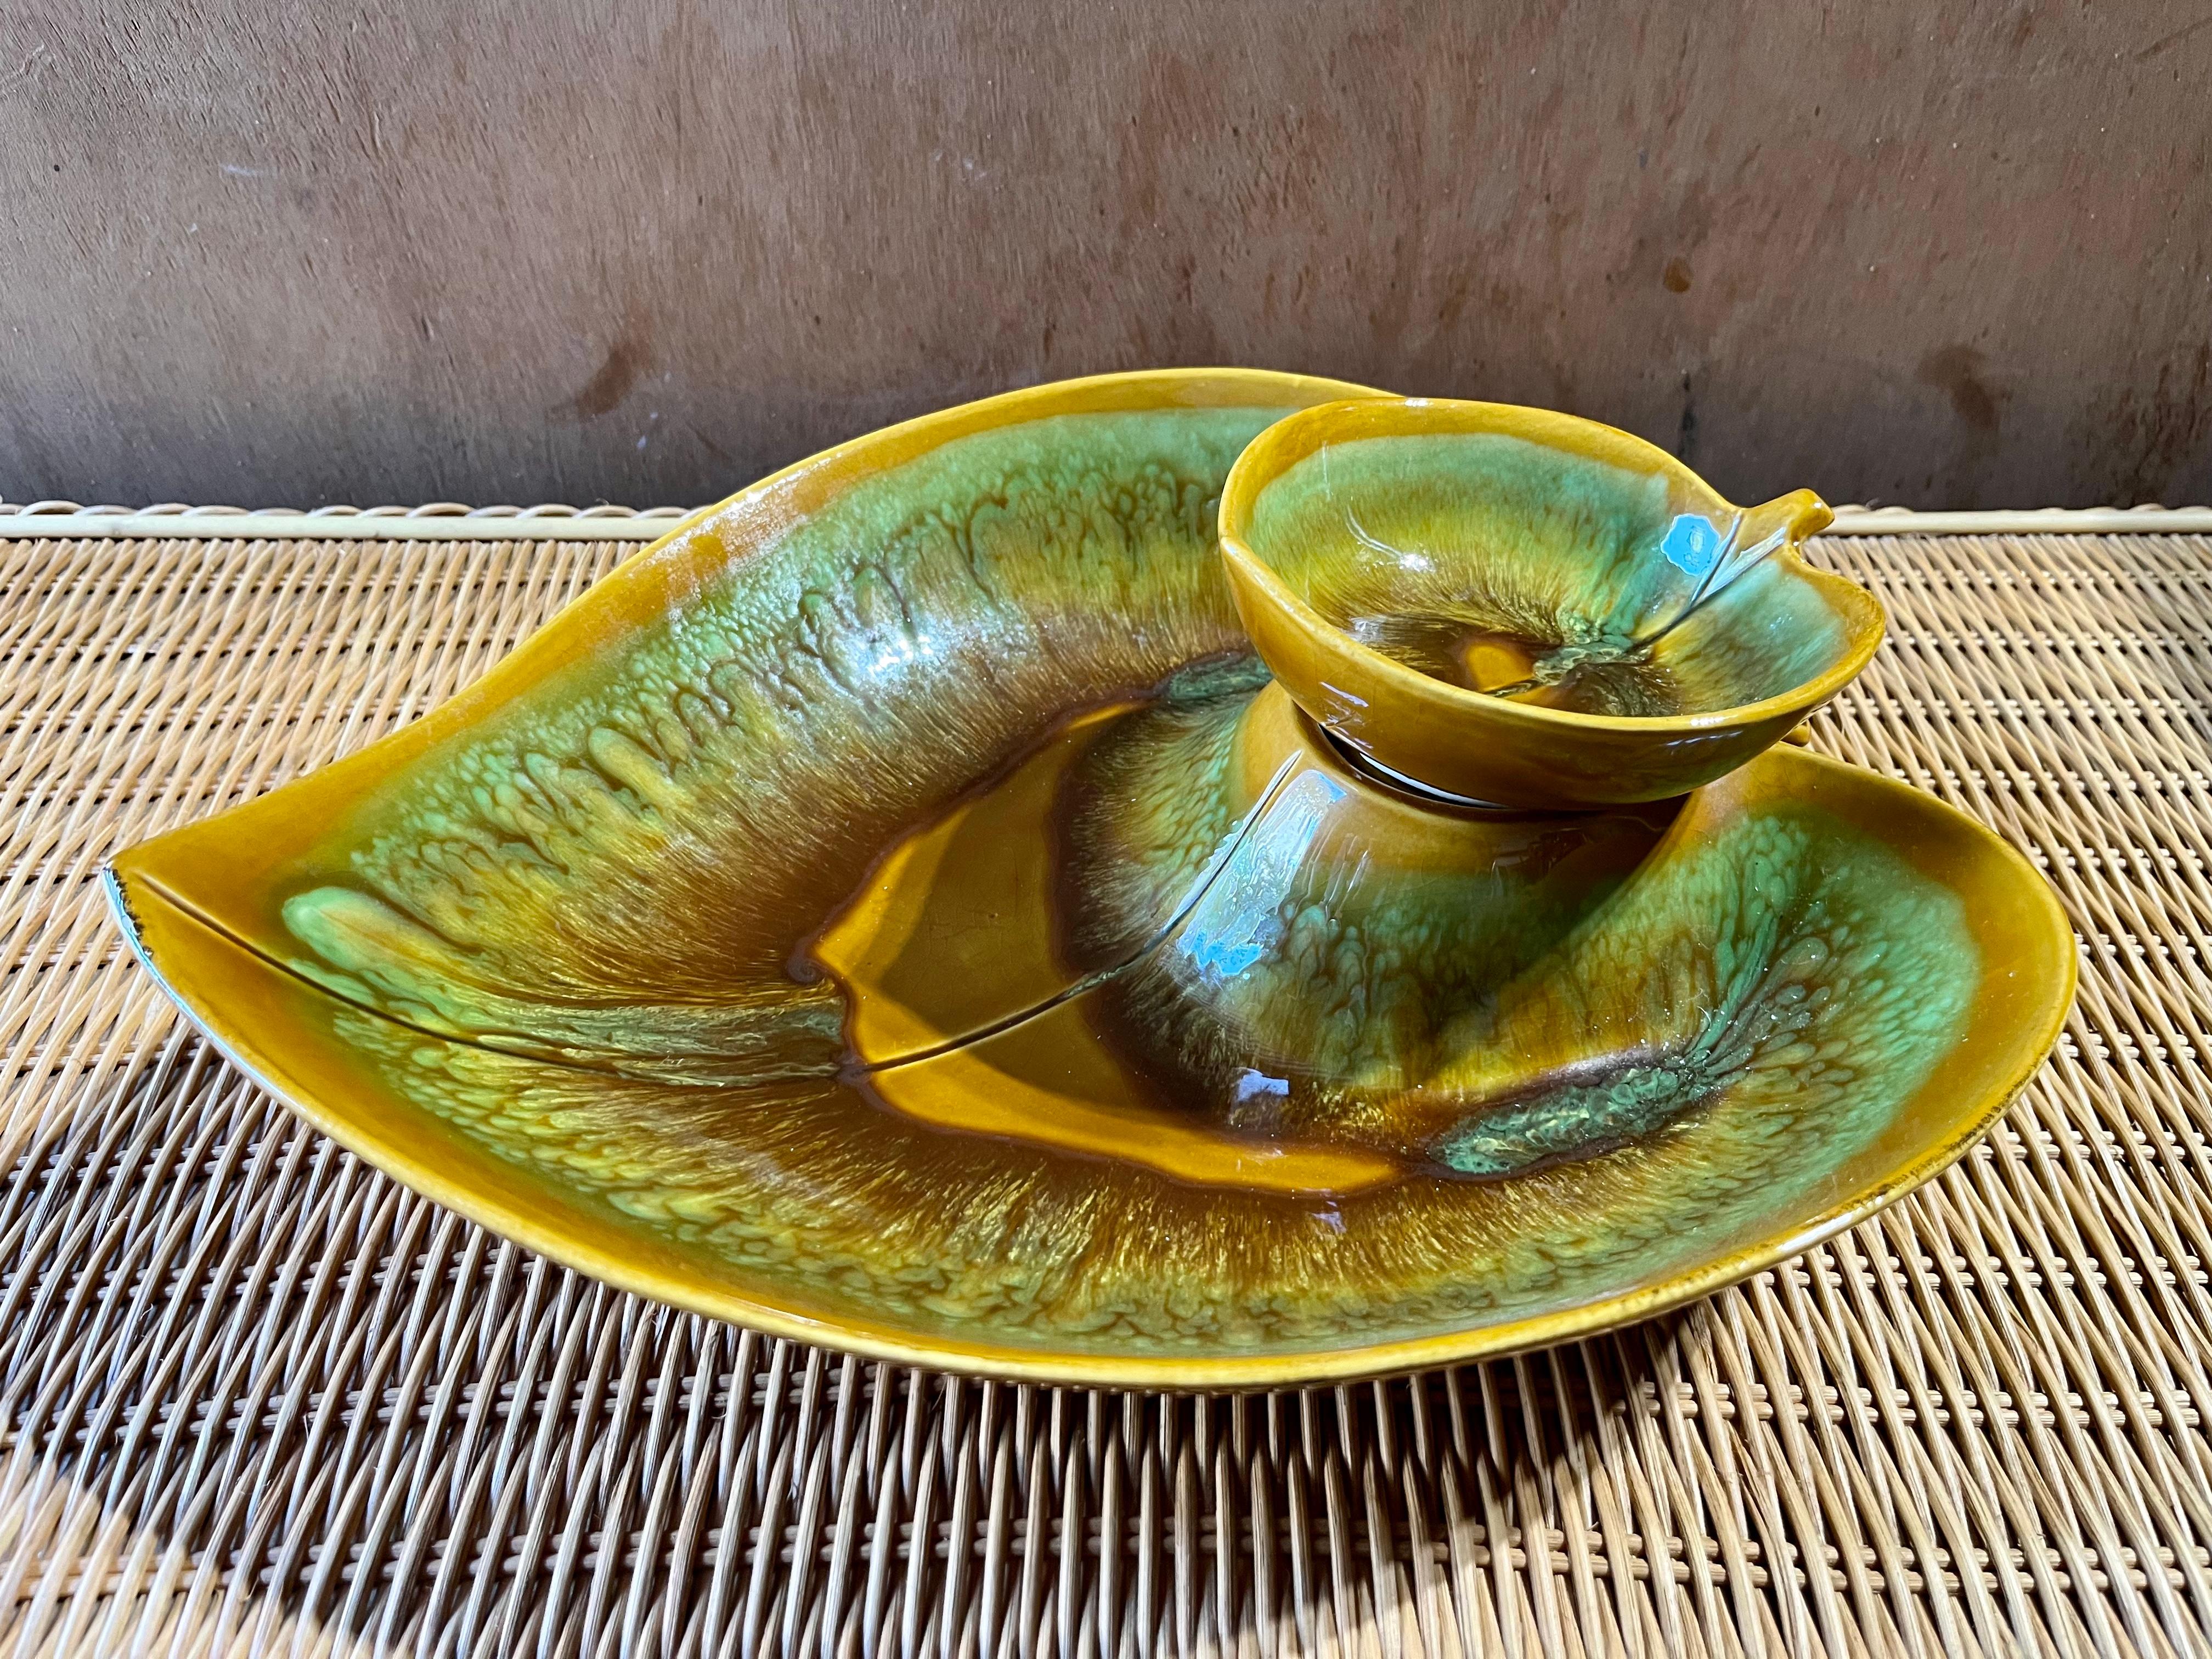 Vintage Mid Century Modern Chip & Dip Green Leaf Glazed Ceramic Bowl. Circa 1960er Jahre
Großzügige Größe und eine schöne Blattform in Avocadogrün, Teal und Braun.
In ausgezeichnetem Originalzustand mit sehr geringen alters- und geschichtstypischen